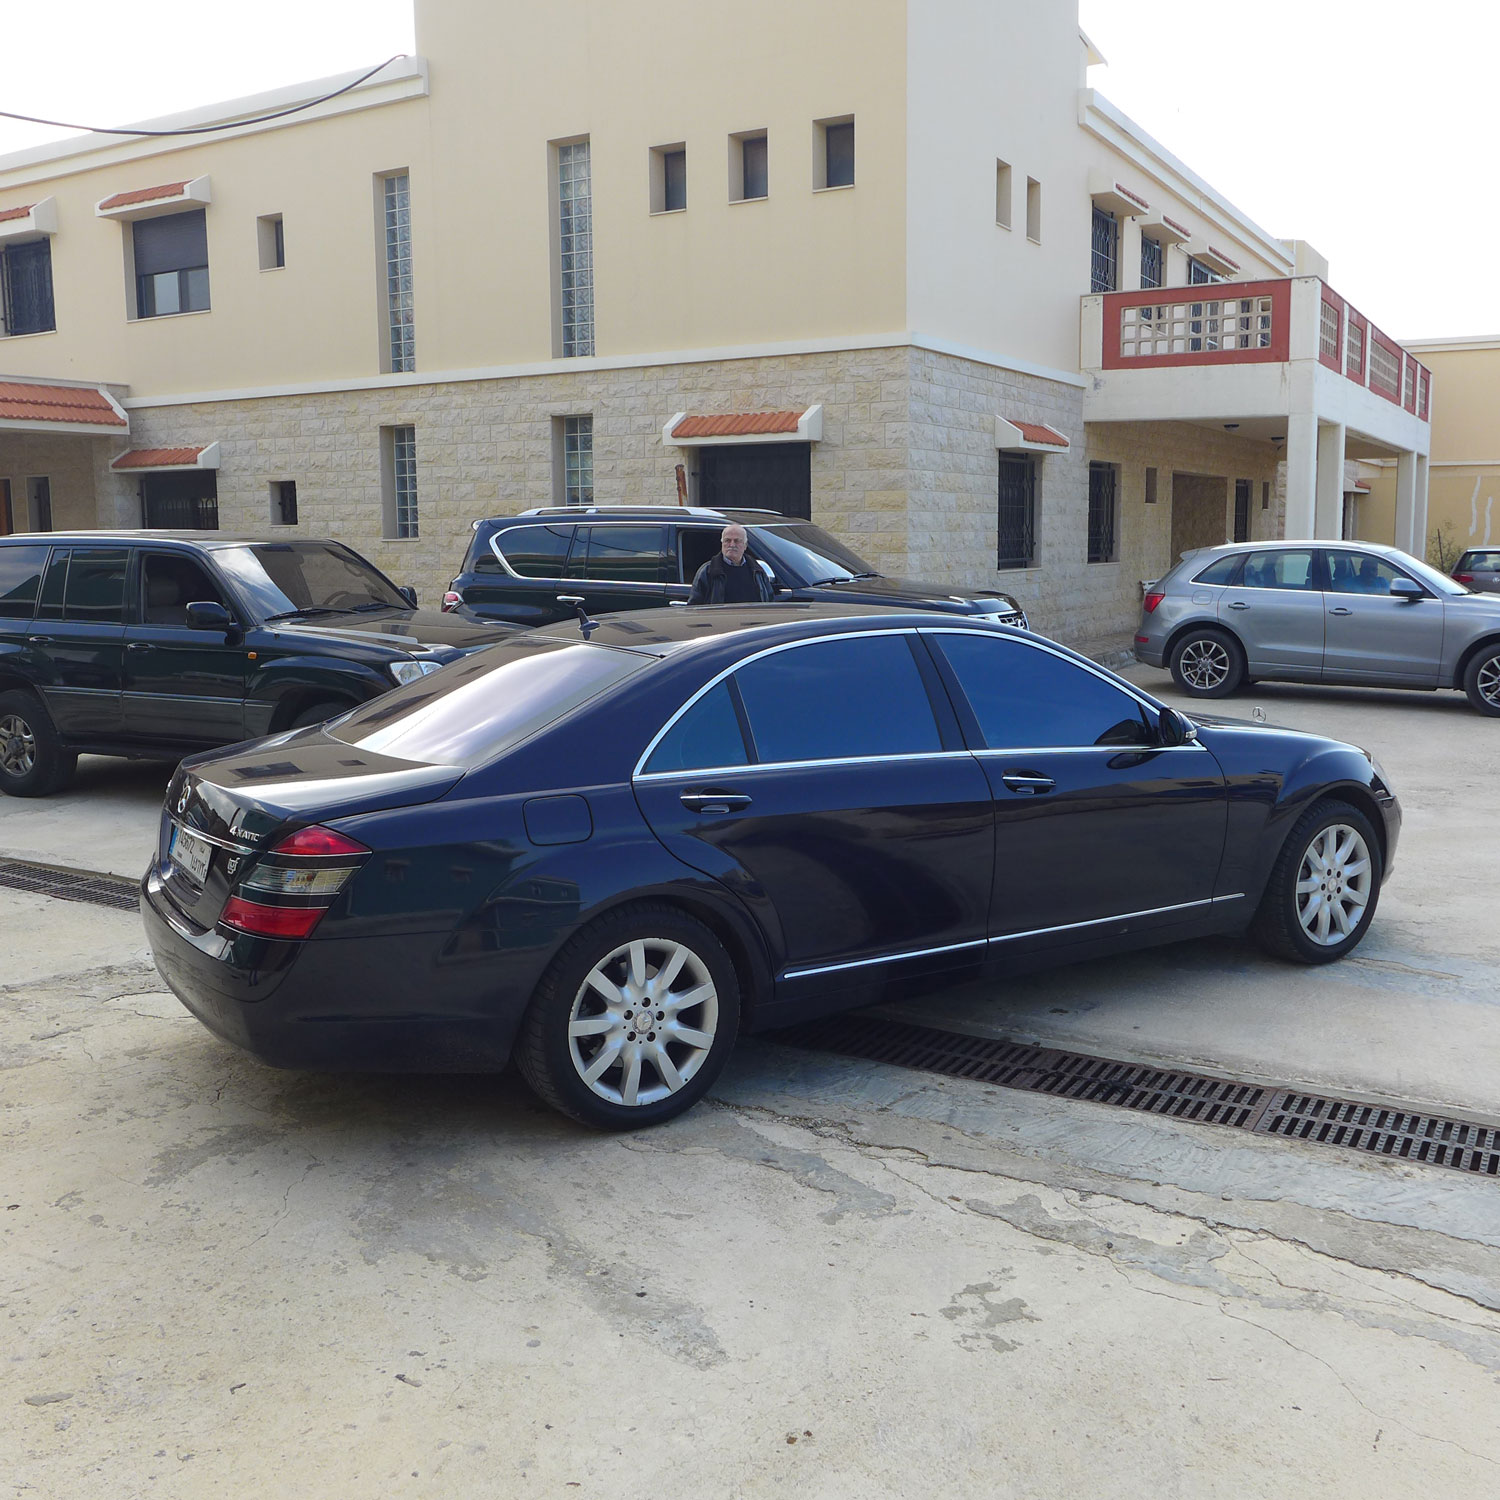 La voiture du ministre arrive sur le lieu de la visite officielle.